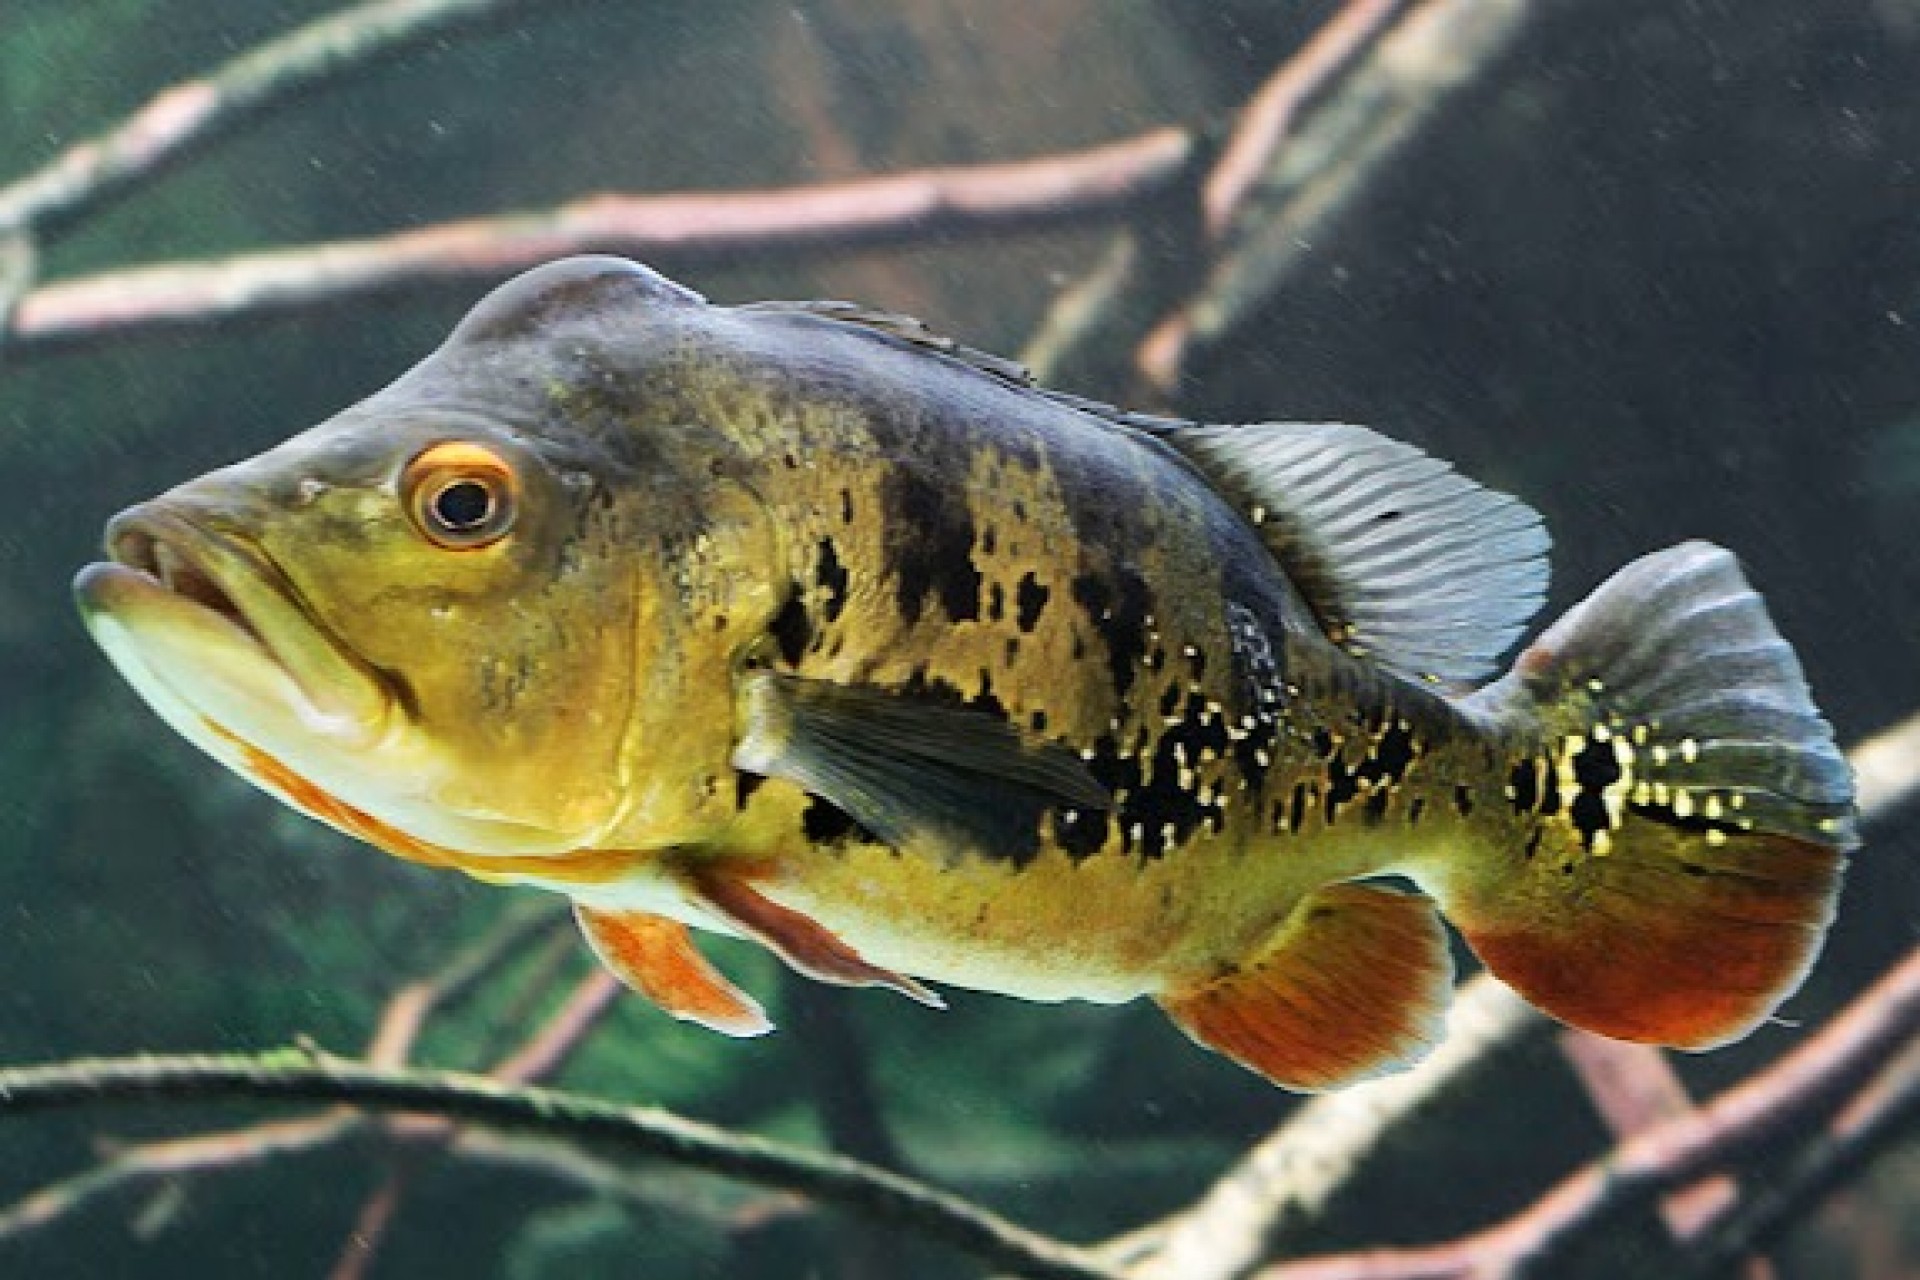 Peixes introduzidos causam desequilíbrio em ecossistemas onde não são nativos